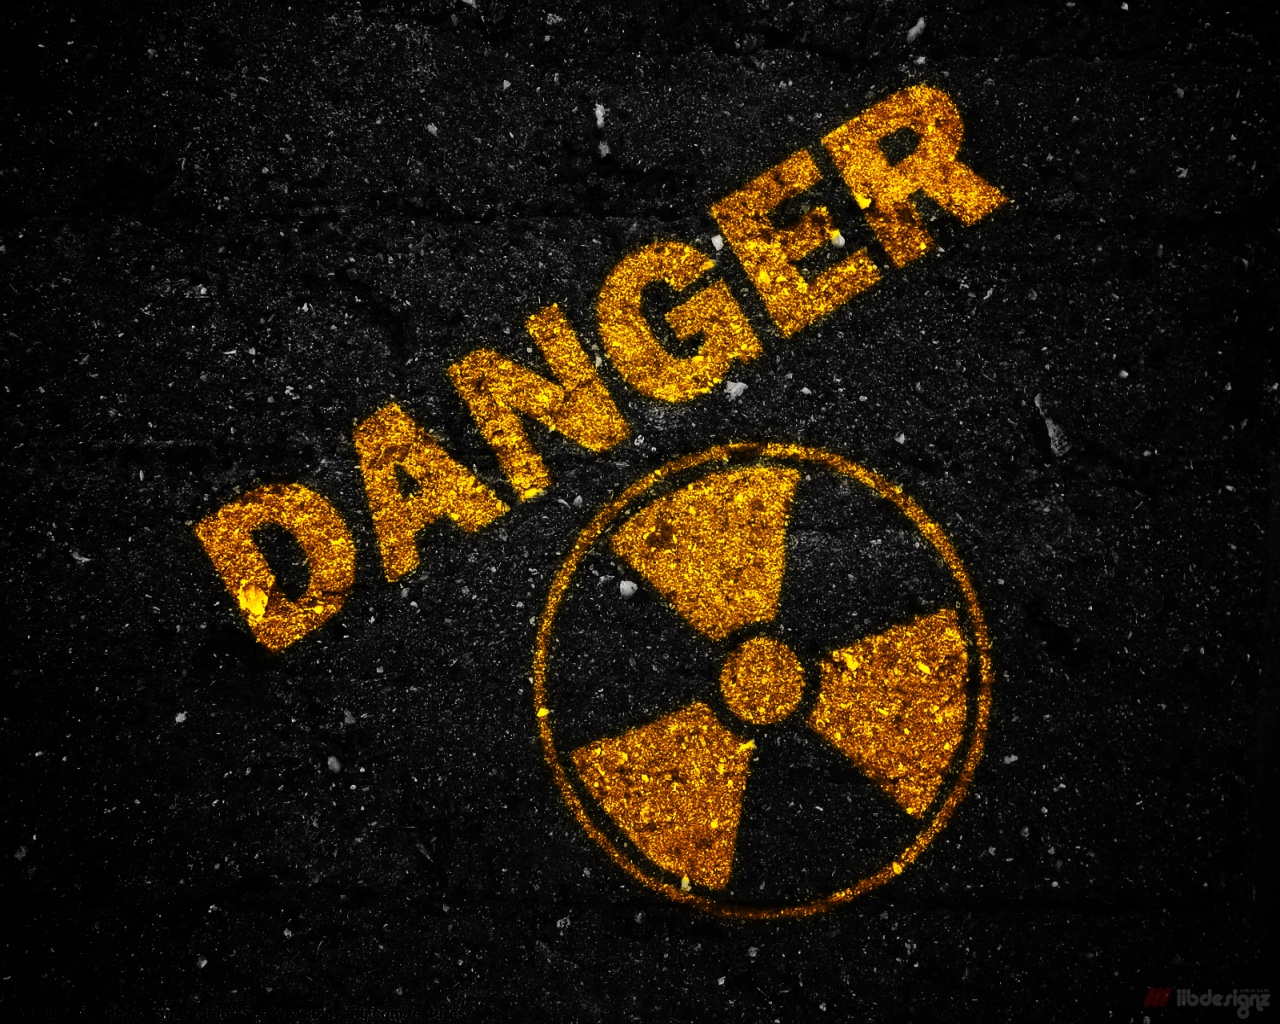 Danger Imagenes - 1280x1024 Wallpaper 